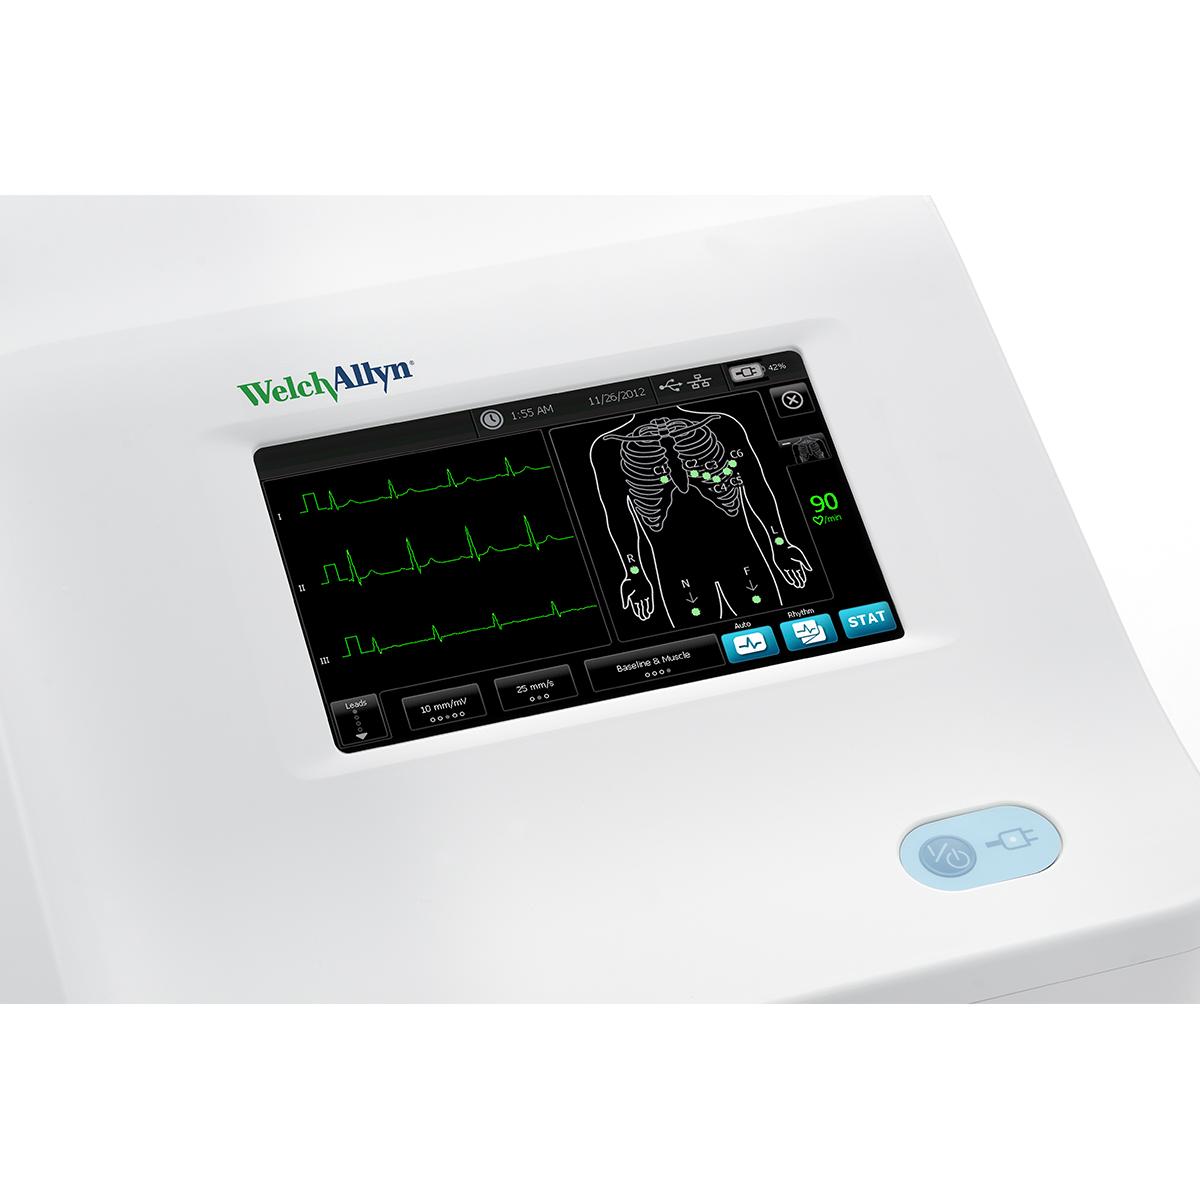 Elektrokardiograf do badań spoczynkowych Welch Allyn CP 150, widok od przodu, z zamontowanym spirometrem, pokazany ekran wspomagający badanie